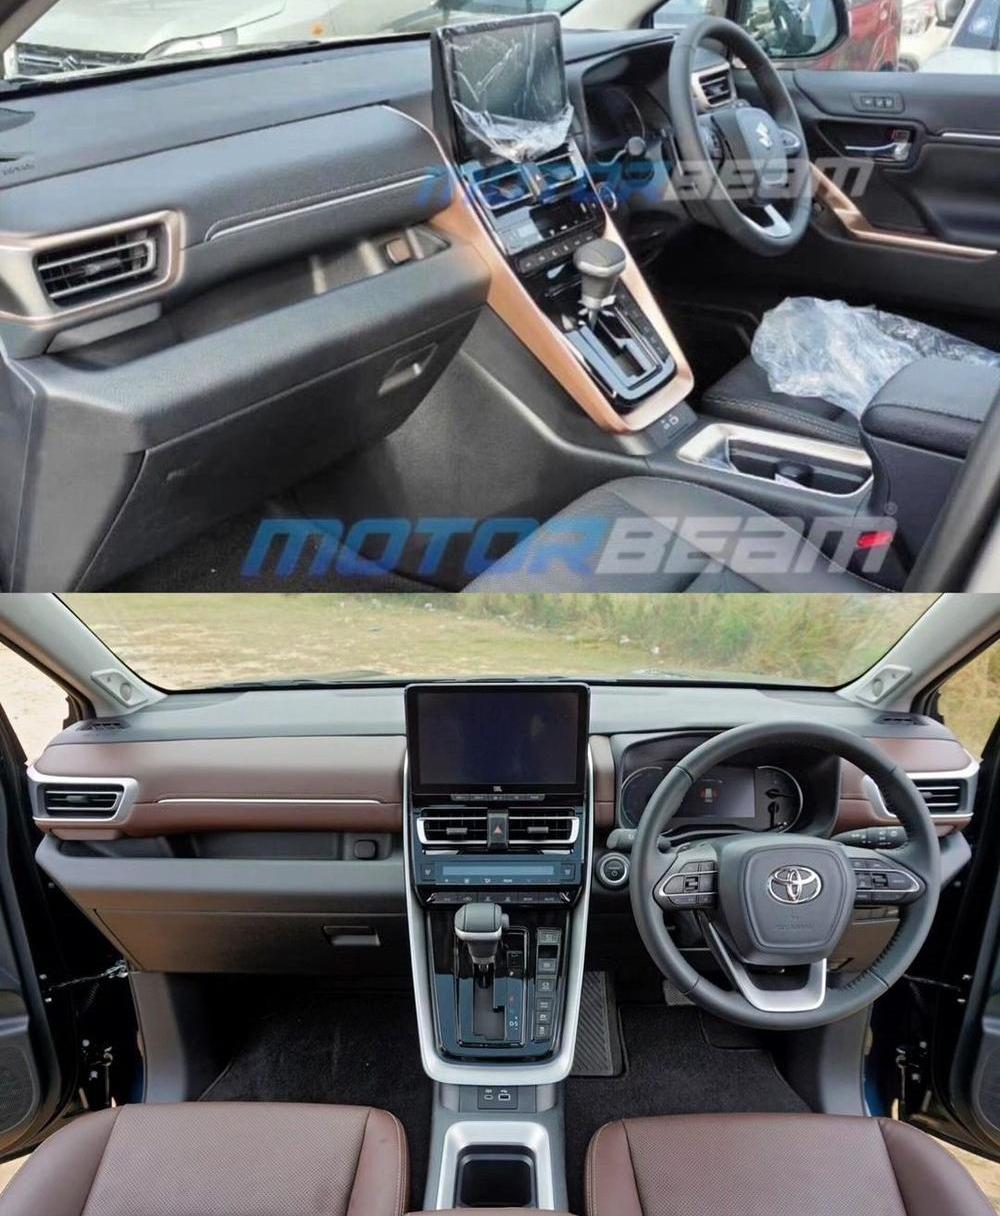 Hình ảnh so sánh nội thất của Suzuki Invicto (trên) và Toyota Innova Hycross 2023 (dưới)Hình ảnh so sánh nội thất của Suzuki Invicto (trên) và Toyota Innova Hycross 2023 (dưới)